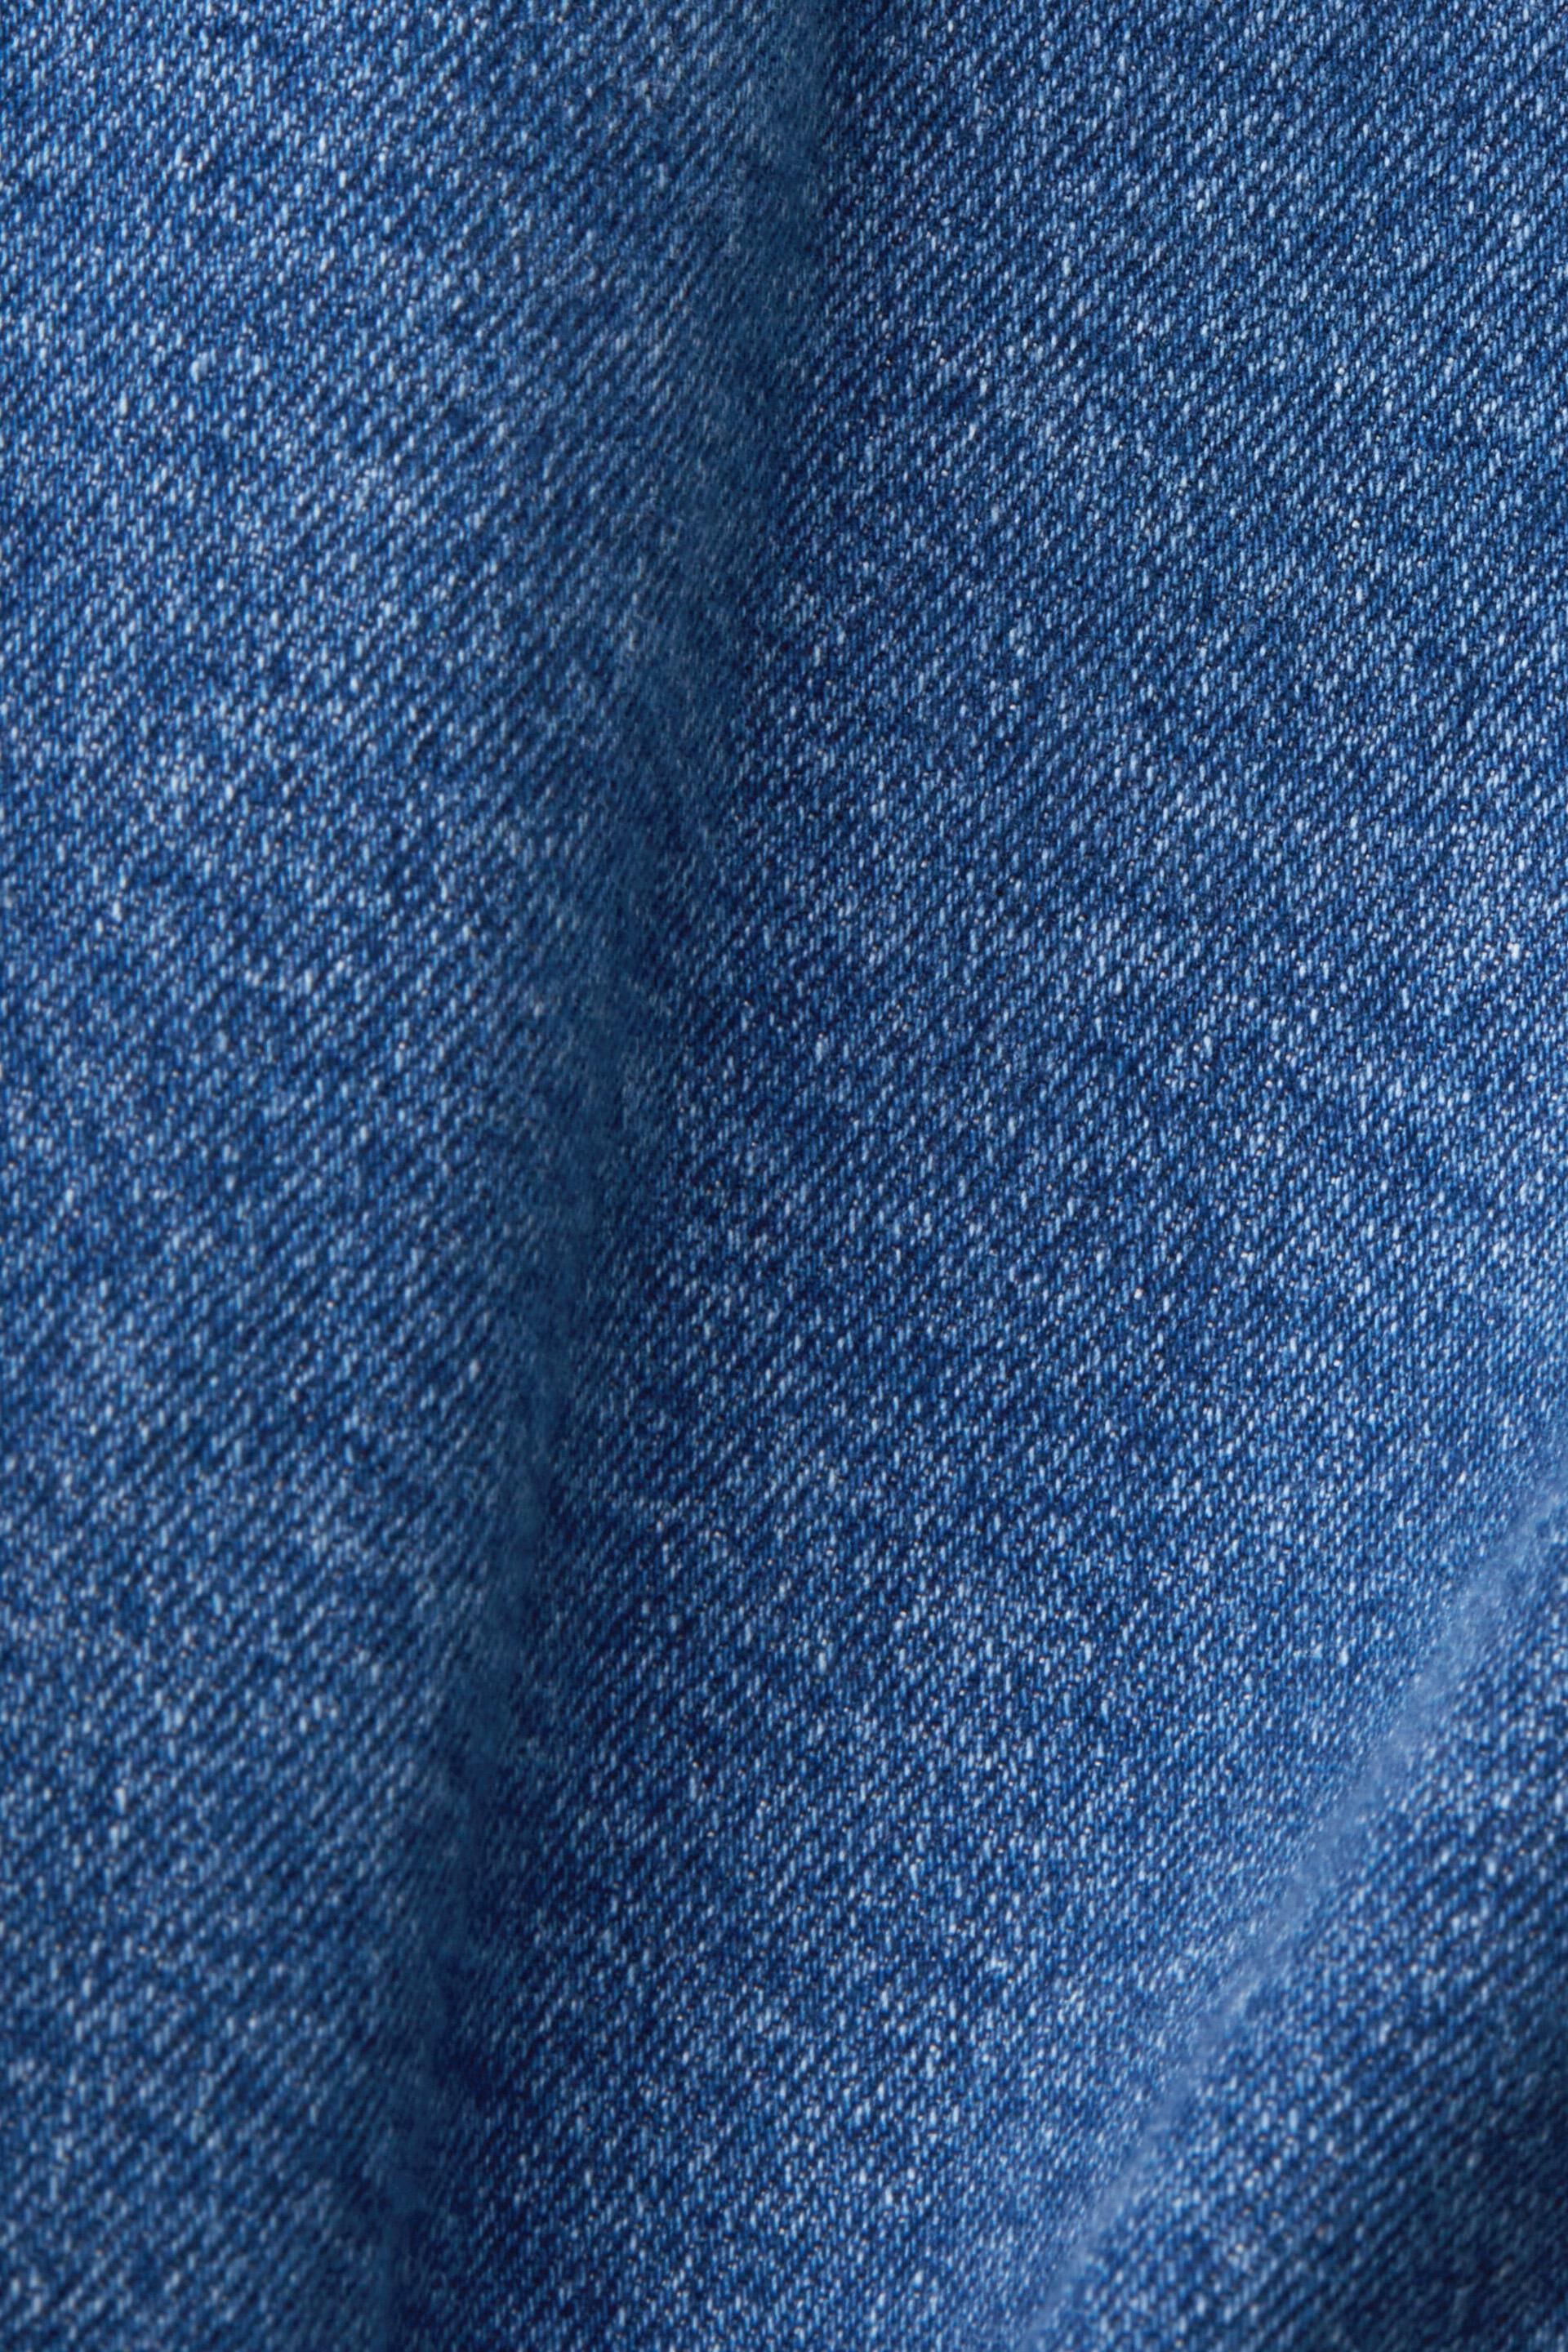 Esprit mit Besatz Jeansjacke geschnittene ausgefranstem Kurz